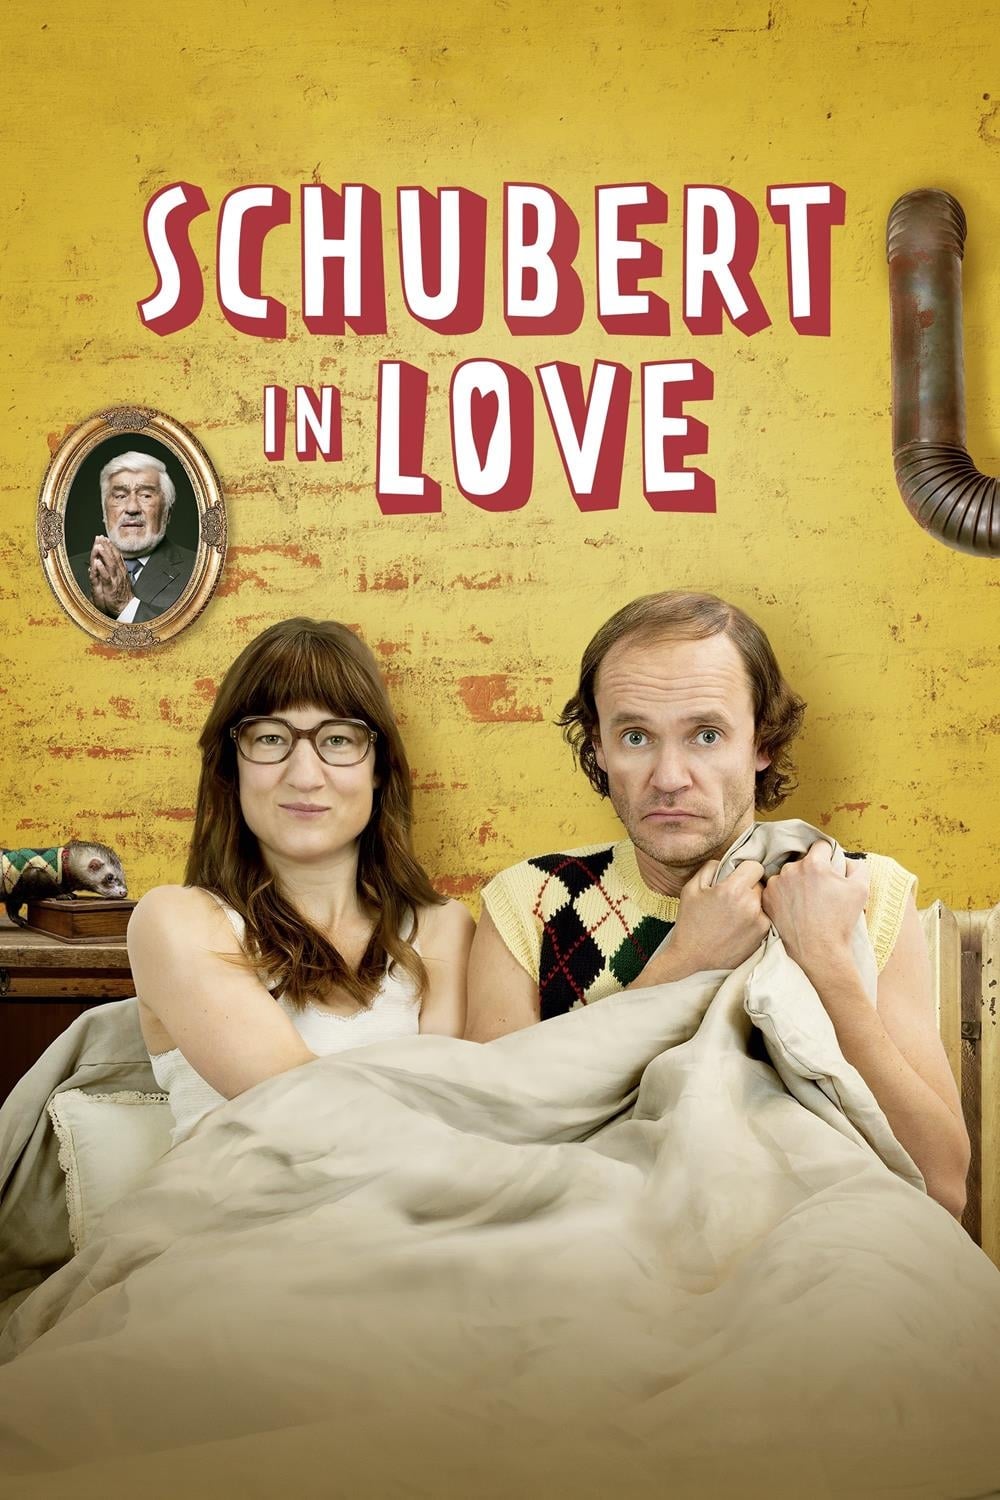 Schubert in Love (2016)